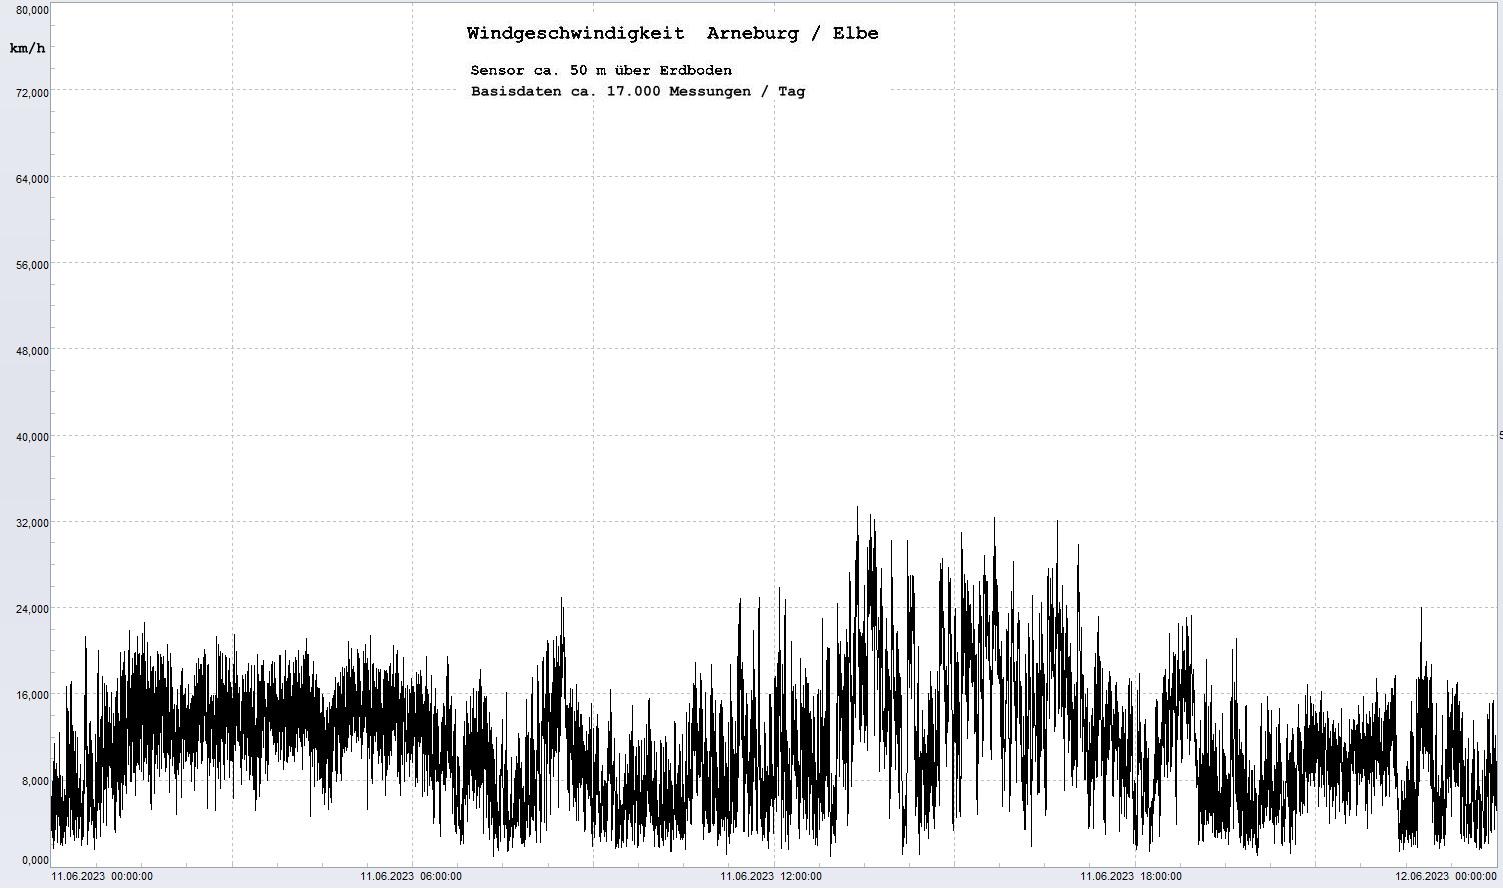 Arneburg Tages-Diagramm Winddaten, 11.06.2023
  Diagramm, Sensor auf Gebäude, ca. 50 m über Erdboden, Basis: 5s-Aufzeichnung